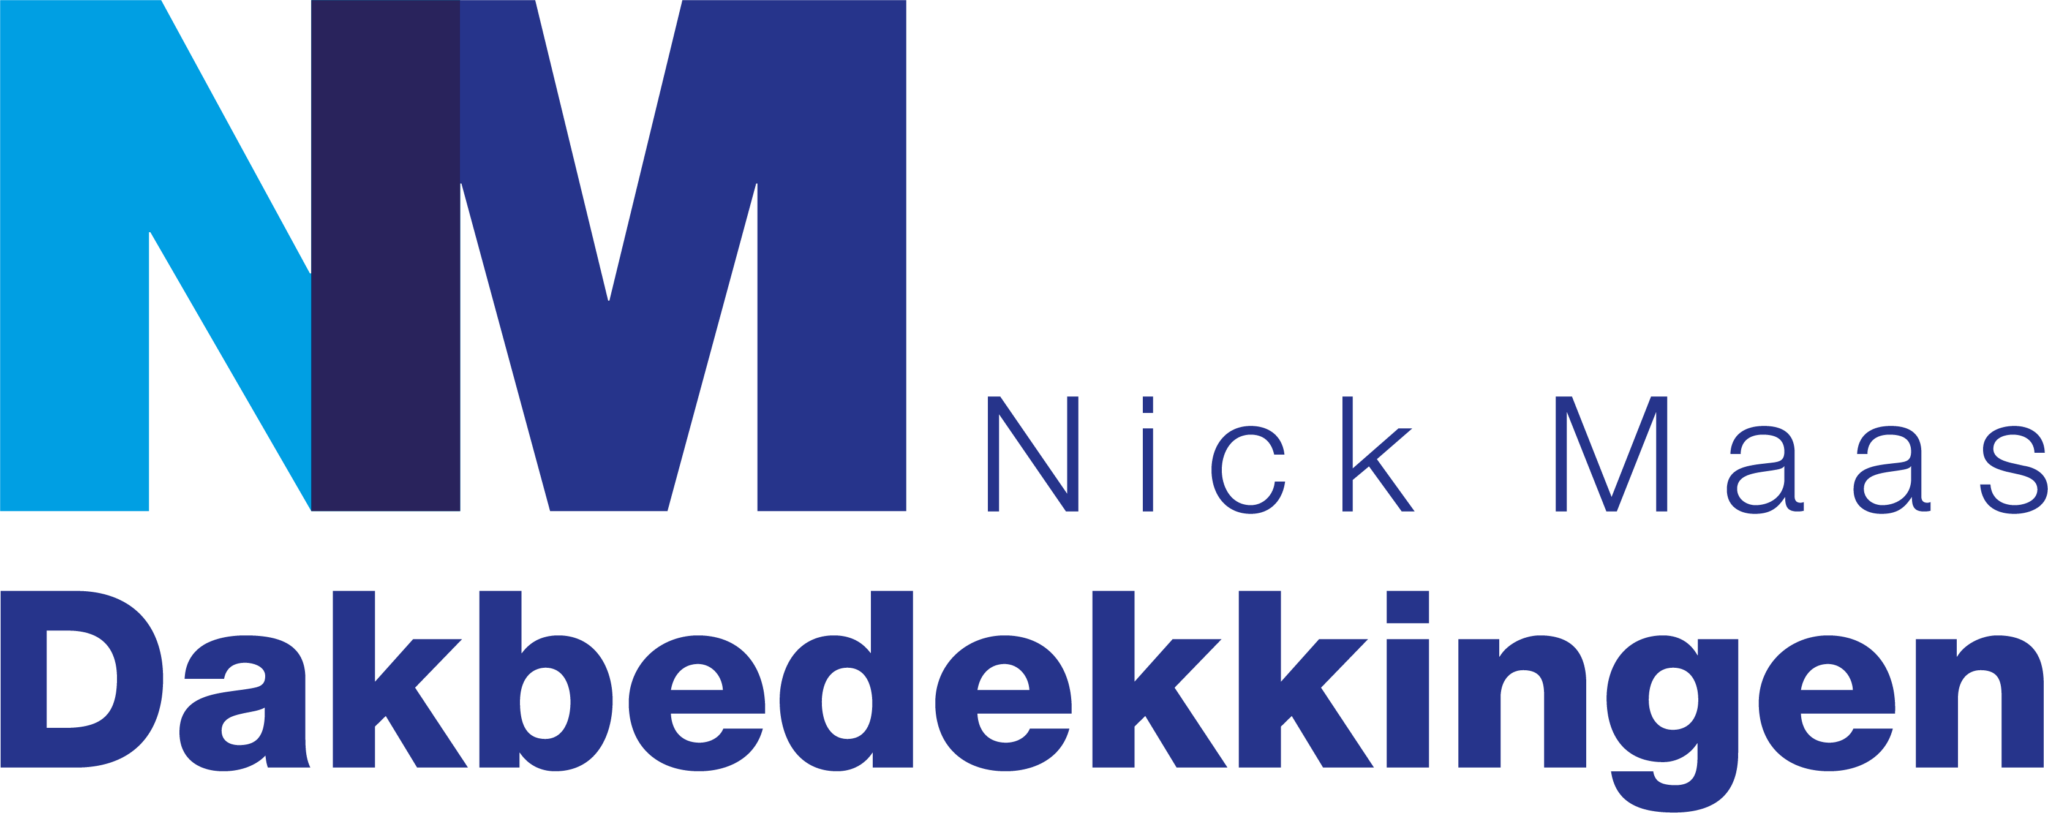 Nick Maas Dakbedekkingen